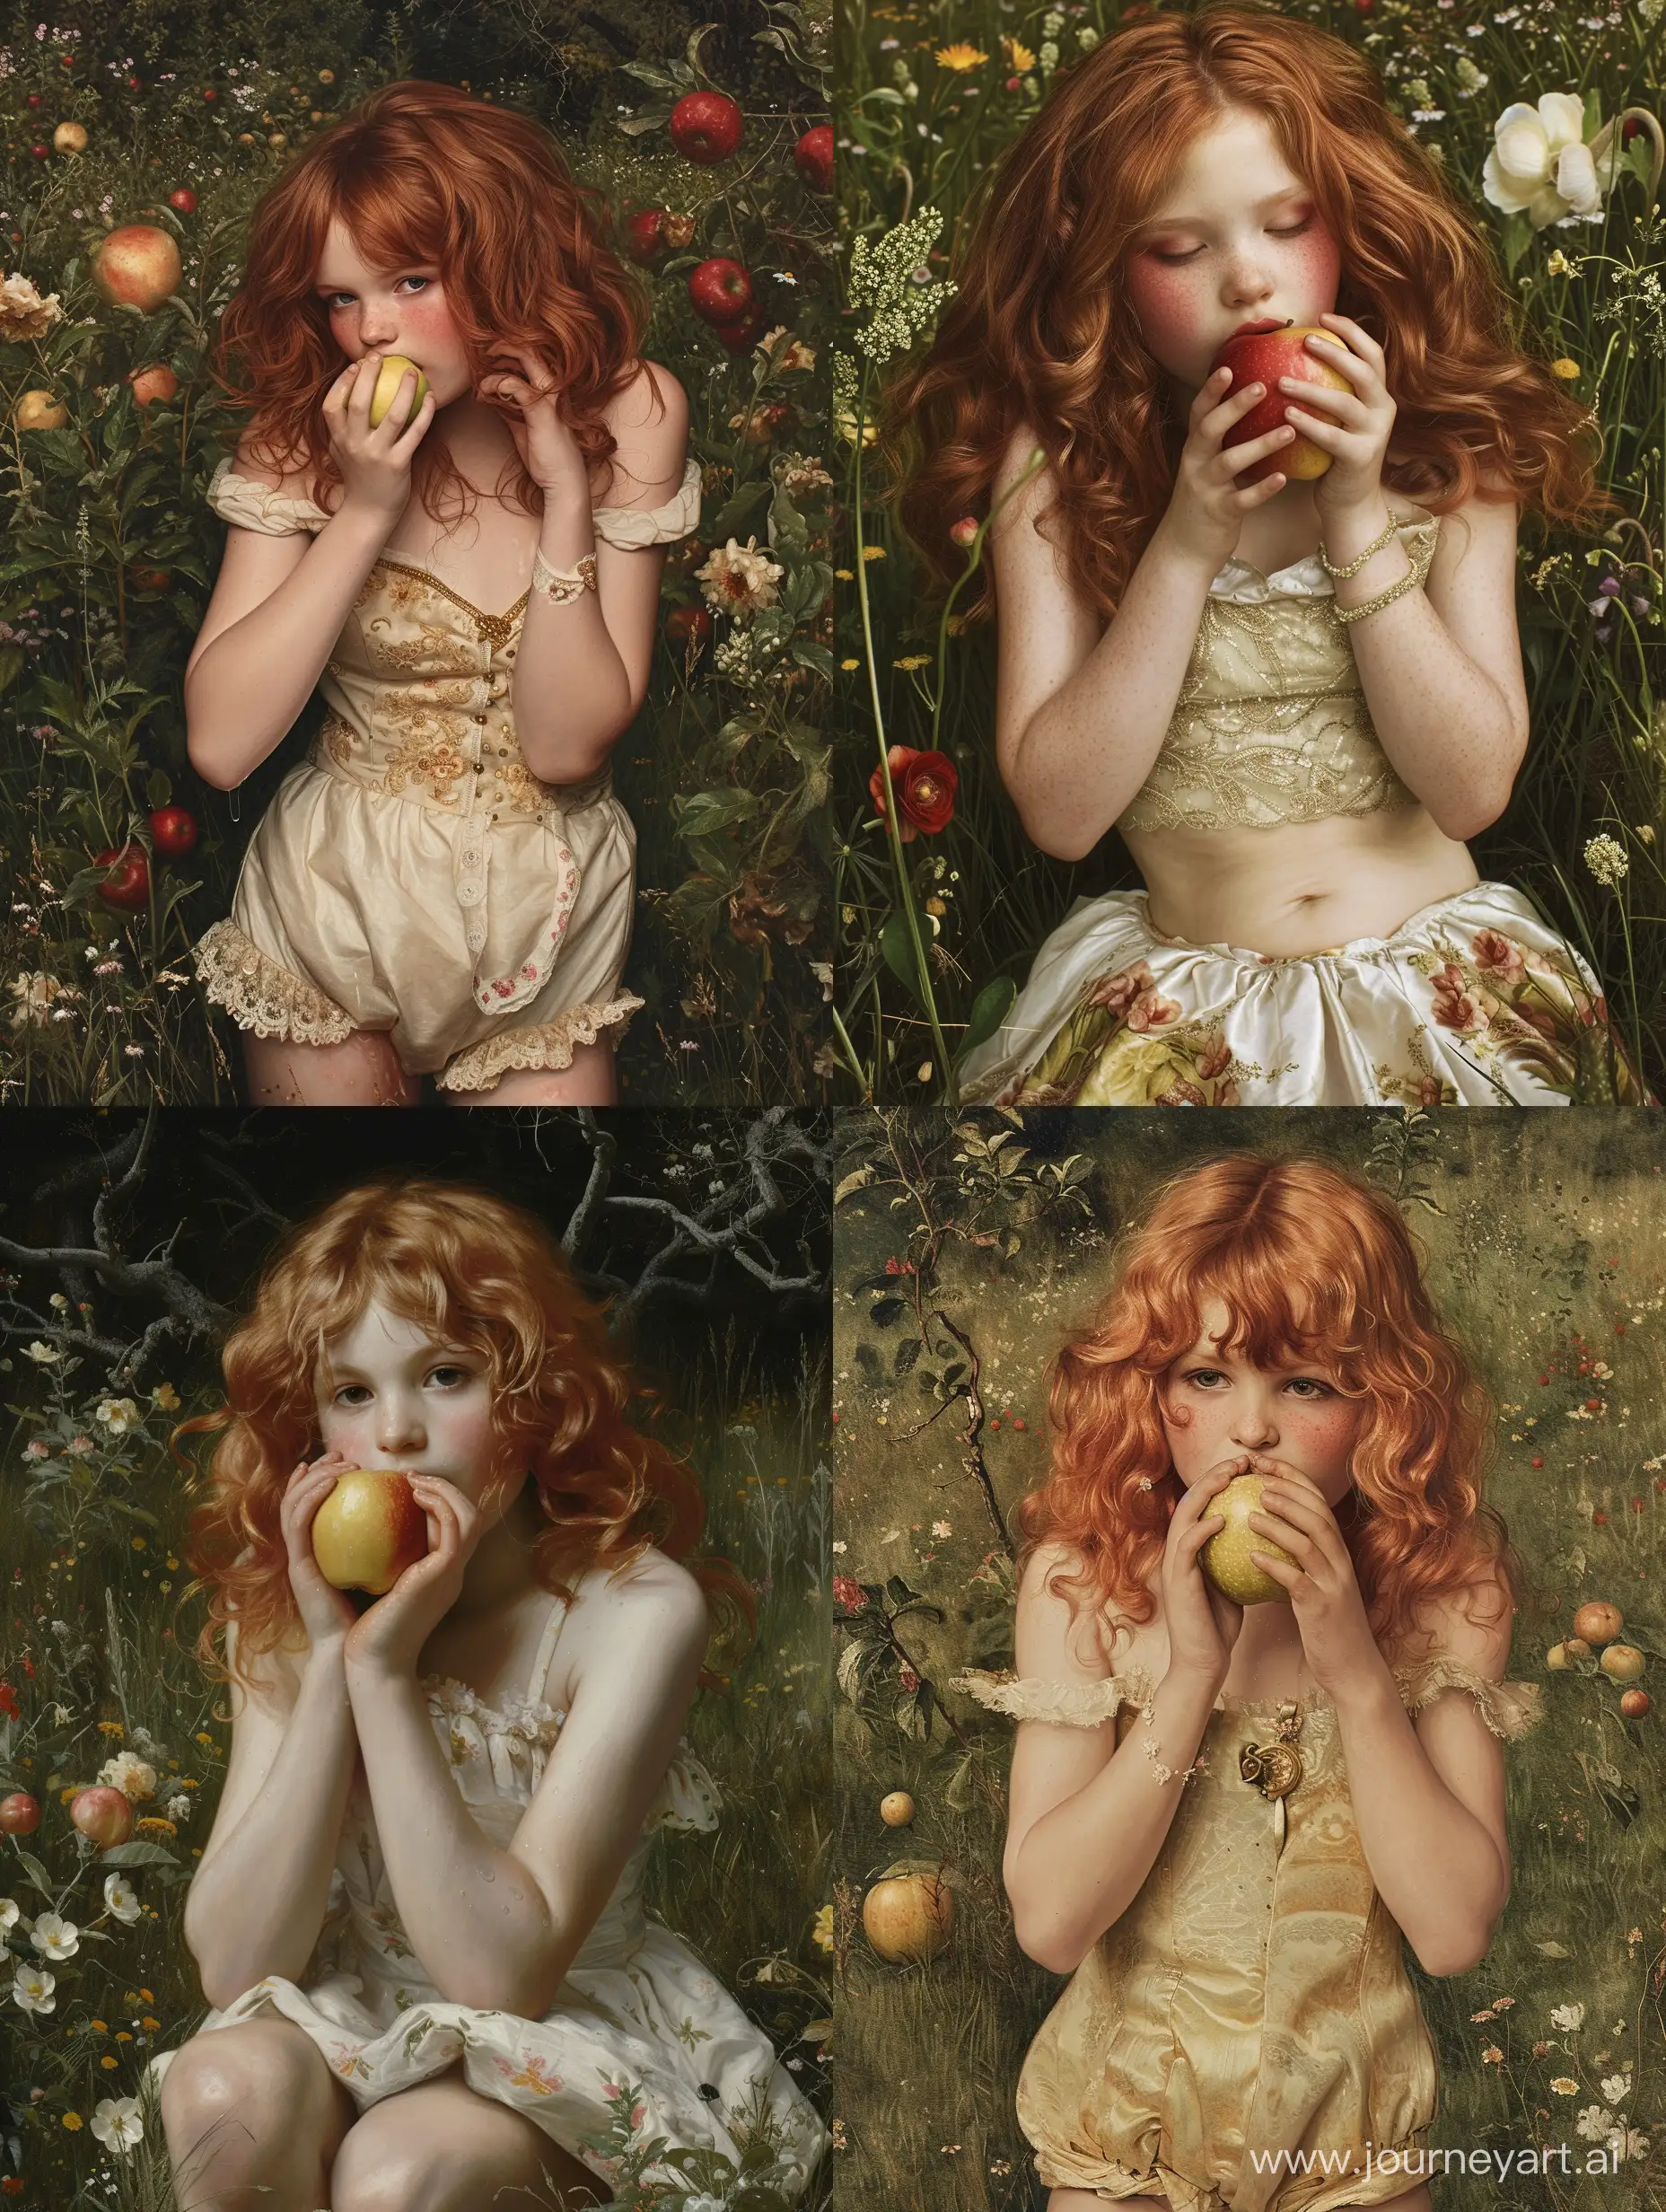   '' Самая толстая в мире девочка страдающая критическим ожирением 12 лет , ест яблоко '' художник Веласкес '' луг заросший цветами , рыжие волнистые волосы , надутые щёки , короткое платье".